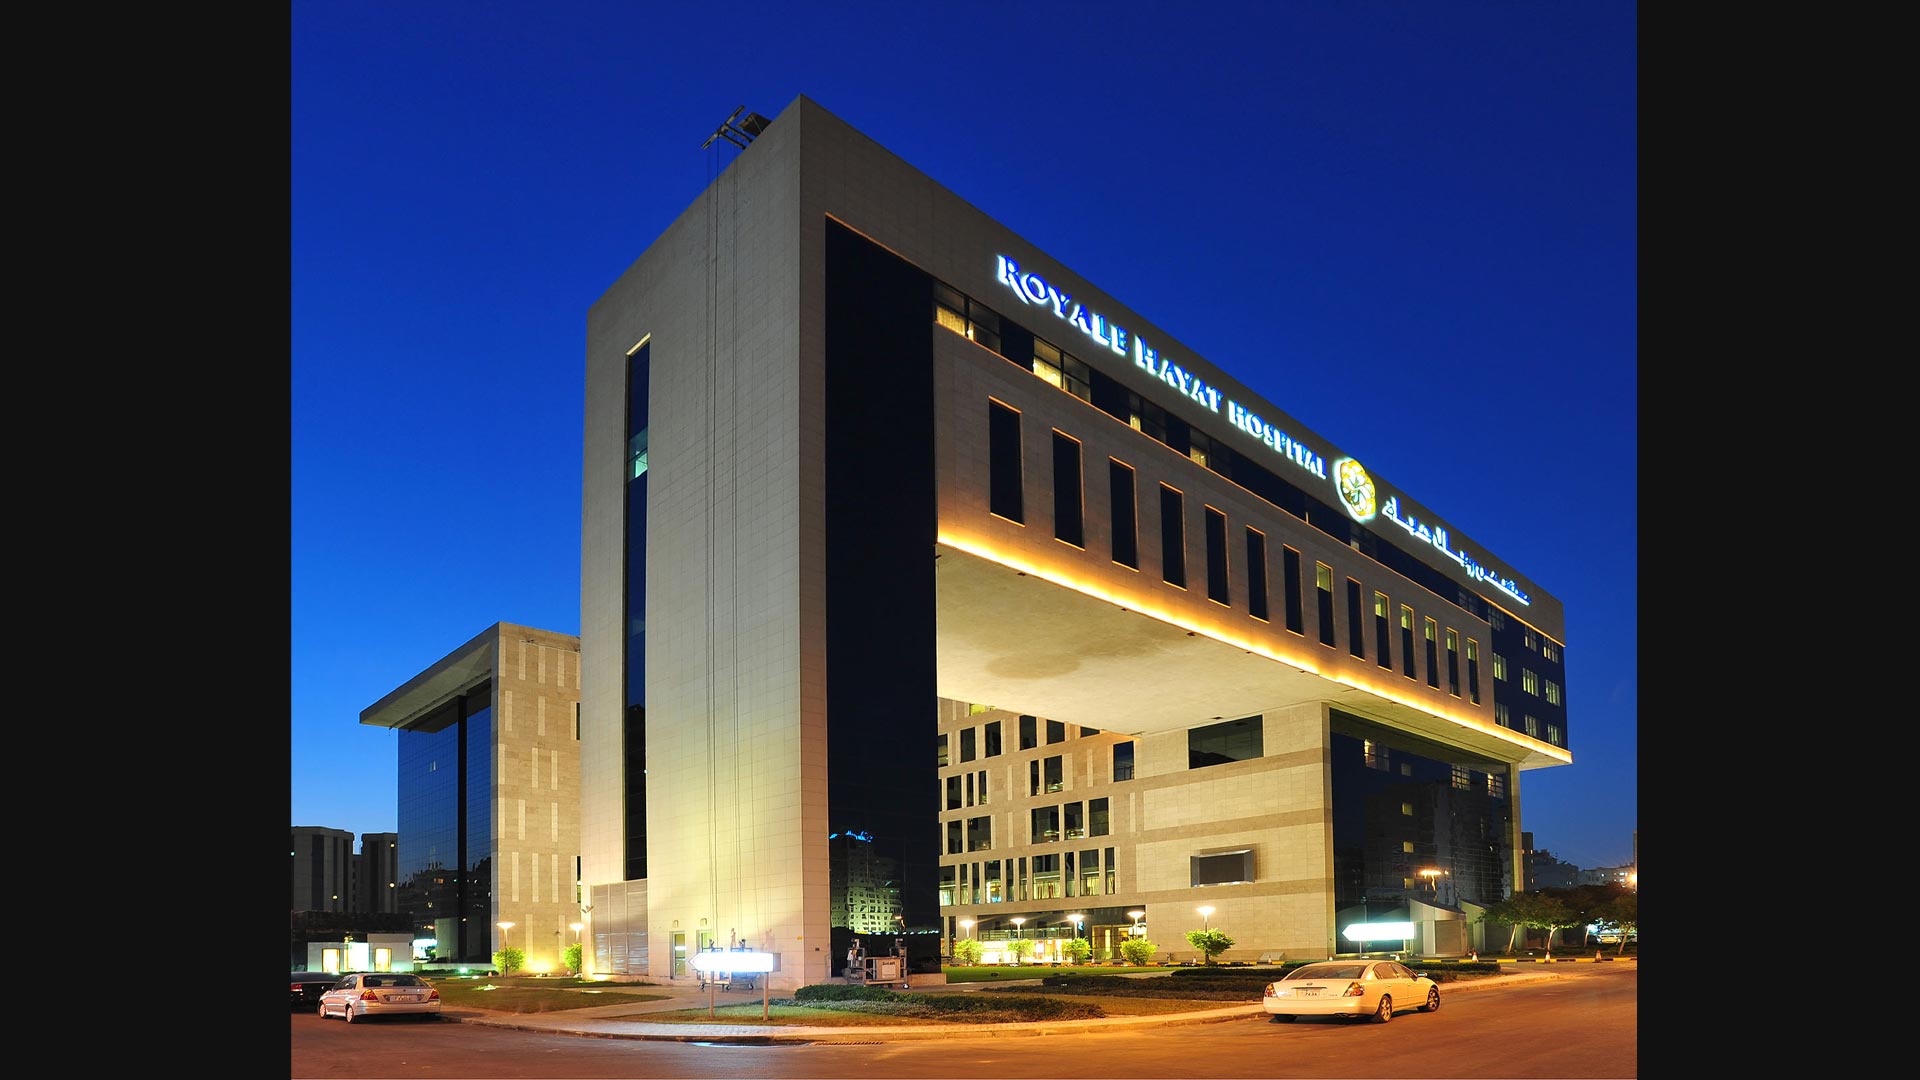 Royal Hayat Hospital, Kuwait